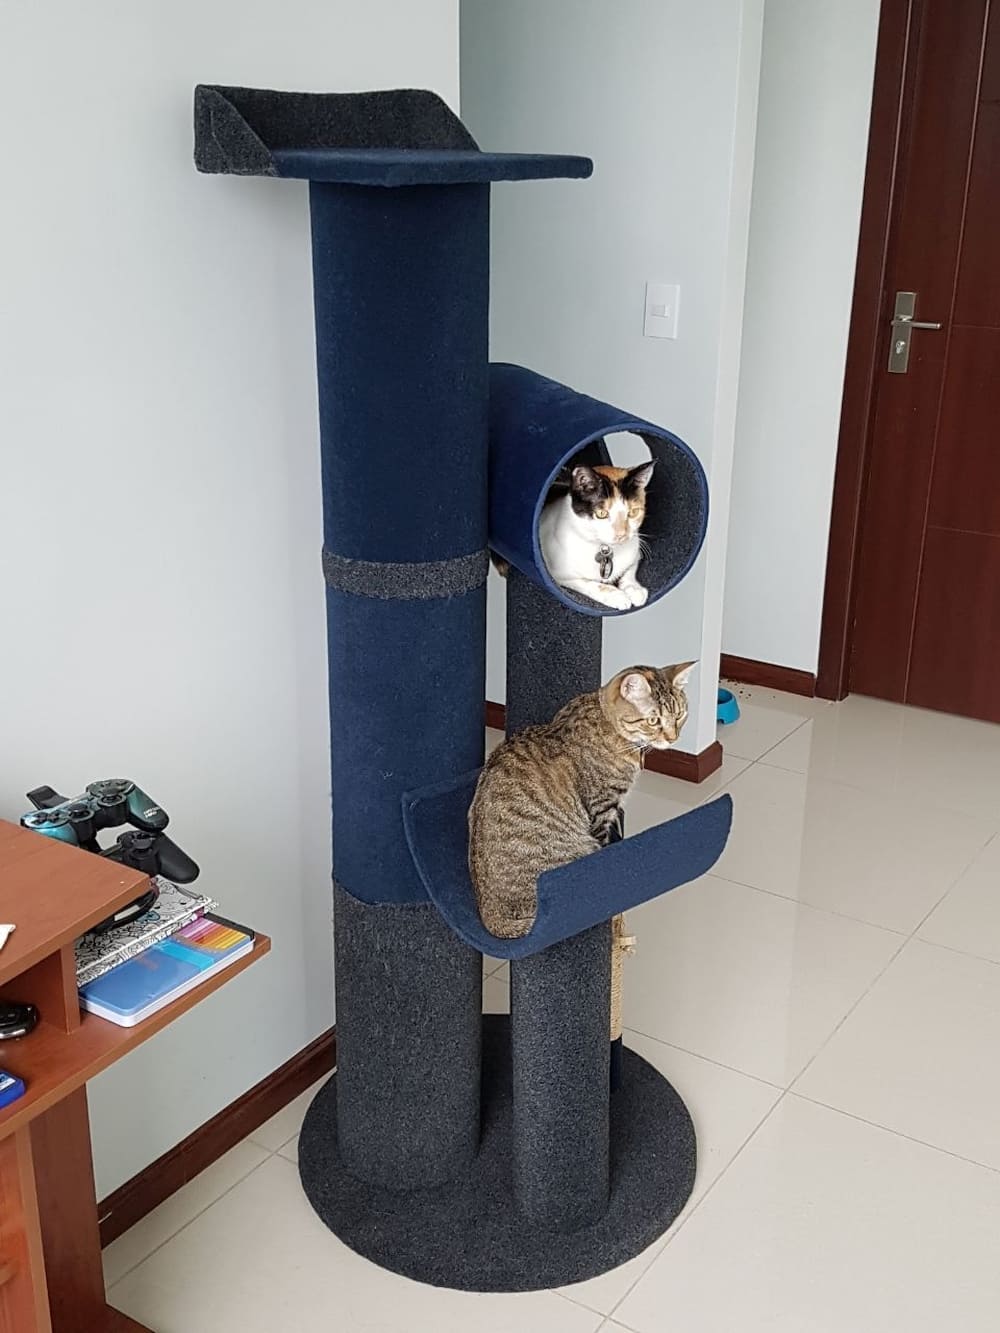 Torre con rascador para gatos.